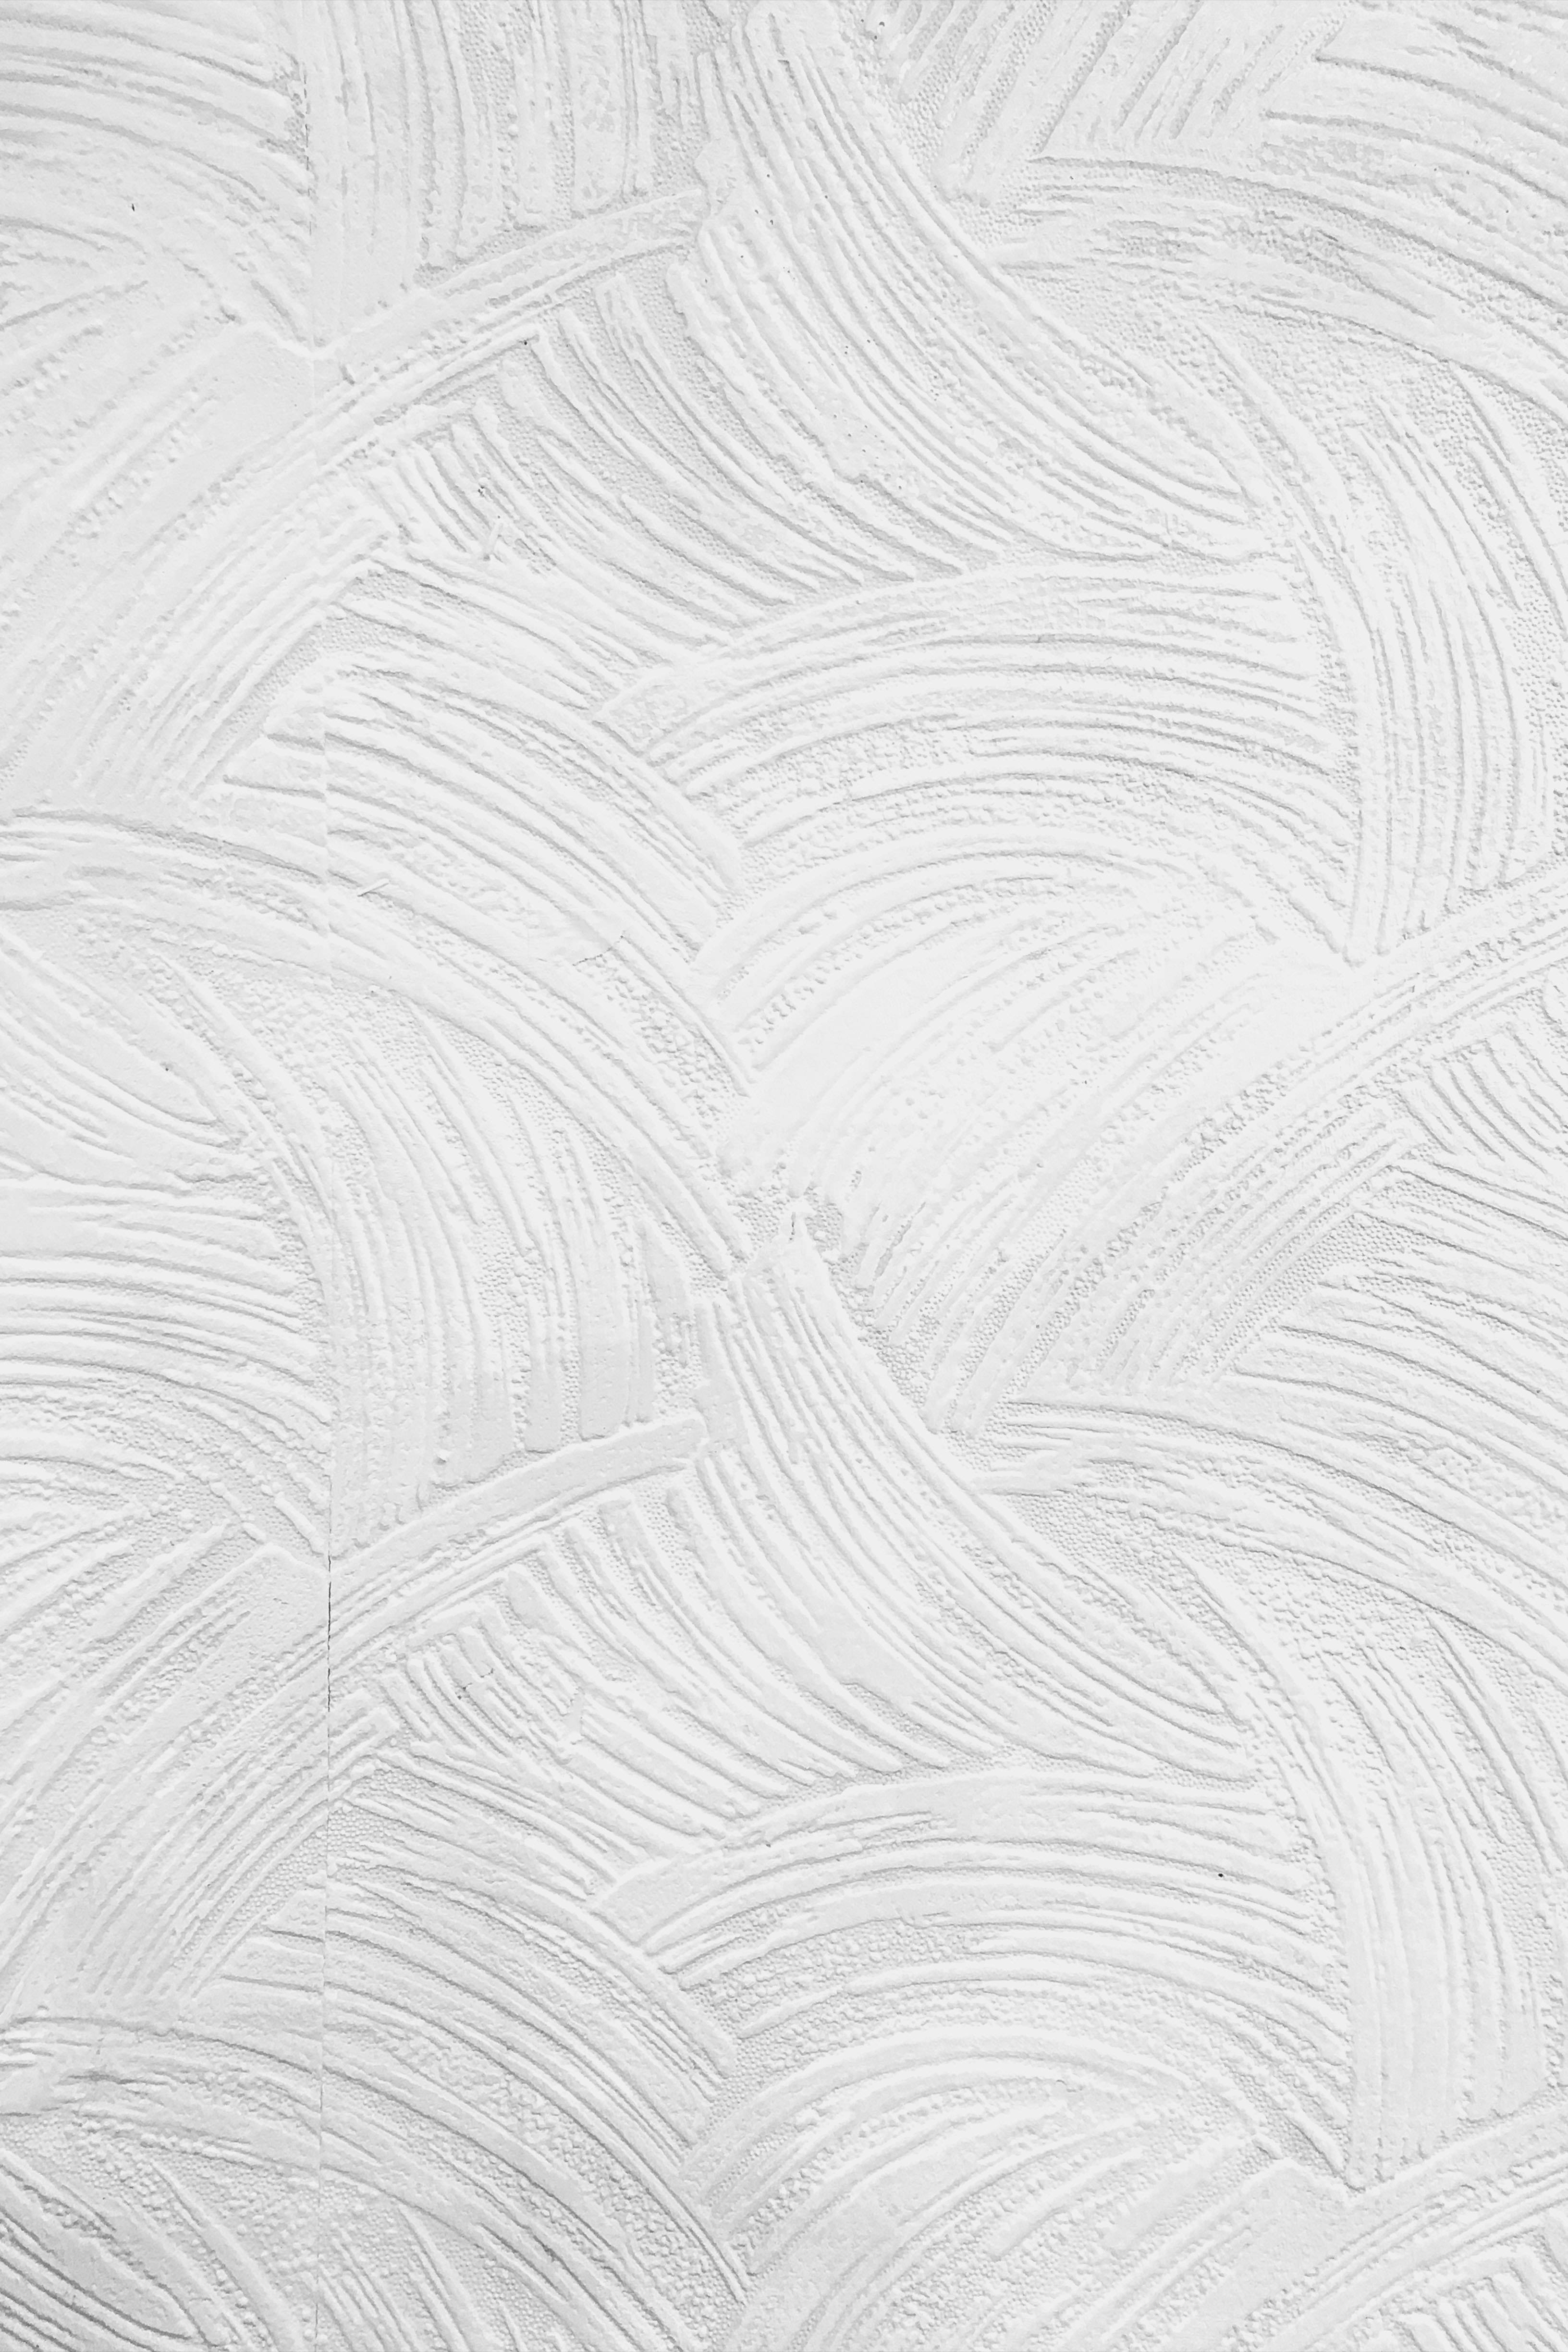 Marmor4k, Weiße Abstrakte Minimalistische Linien. Wallpaper